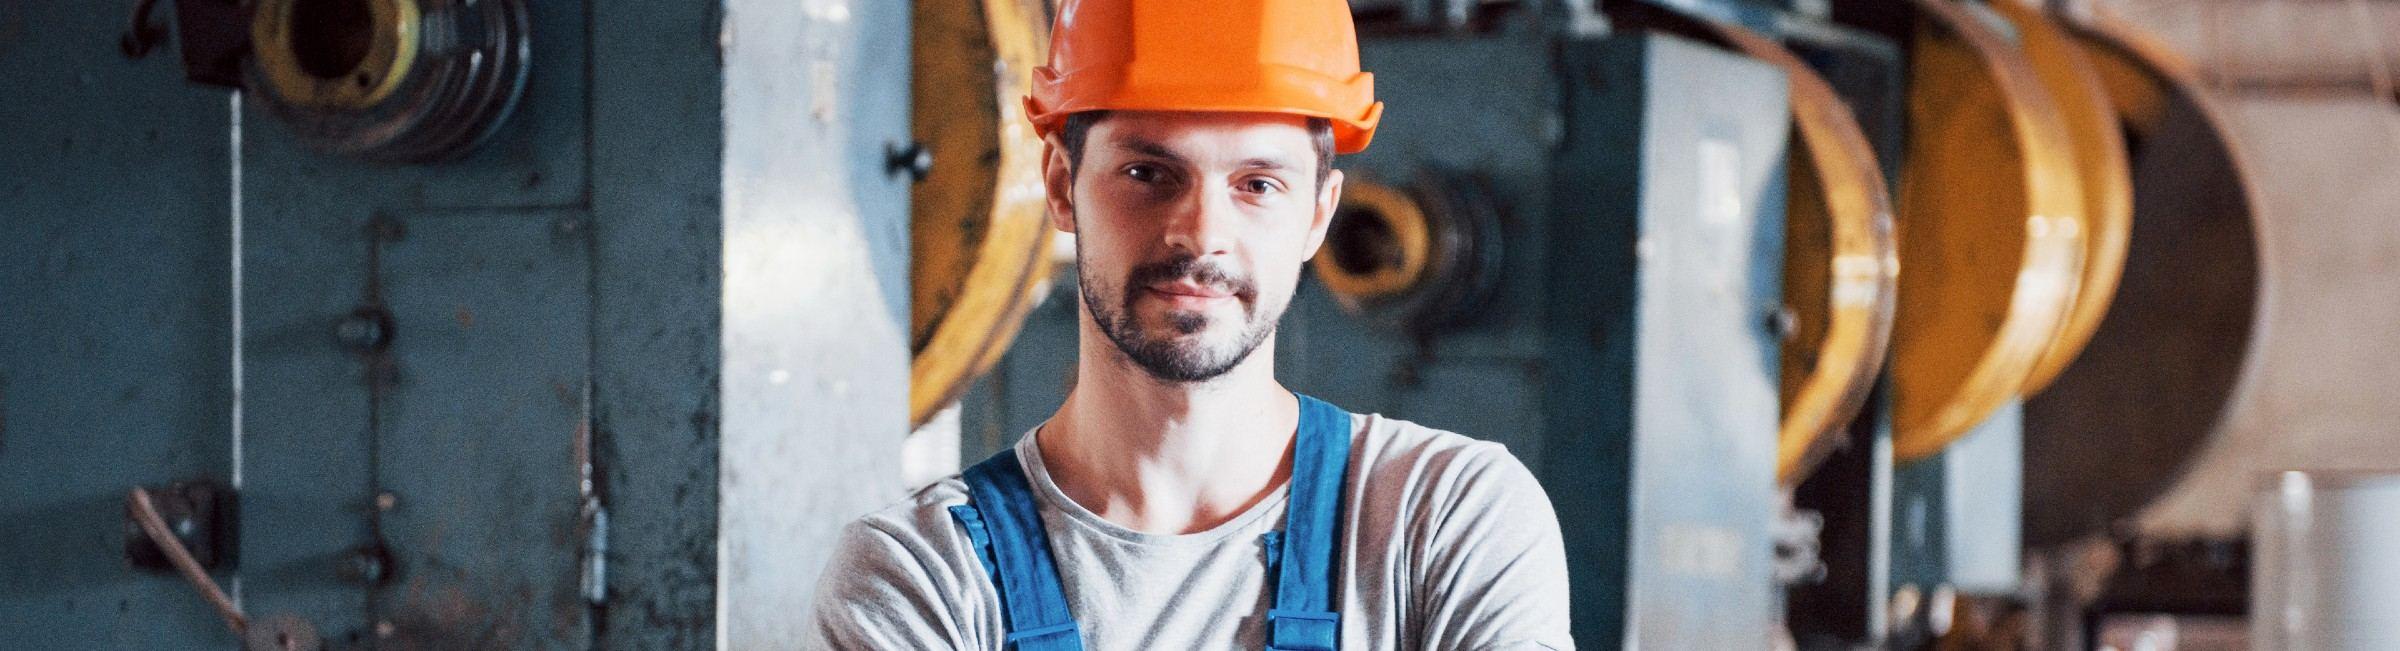 Un technicien de maintenance avec un casque orange